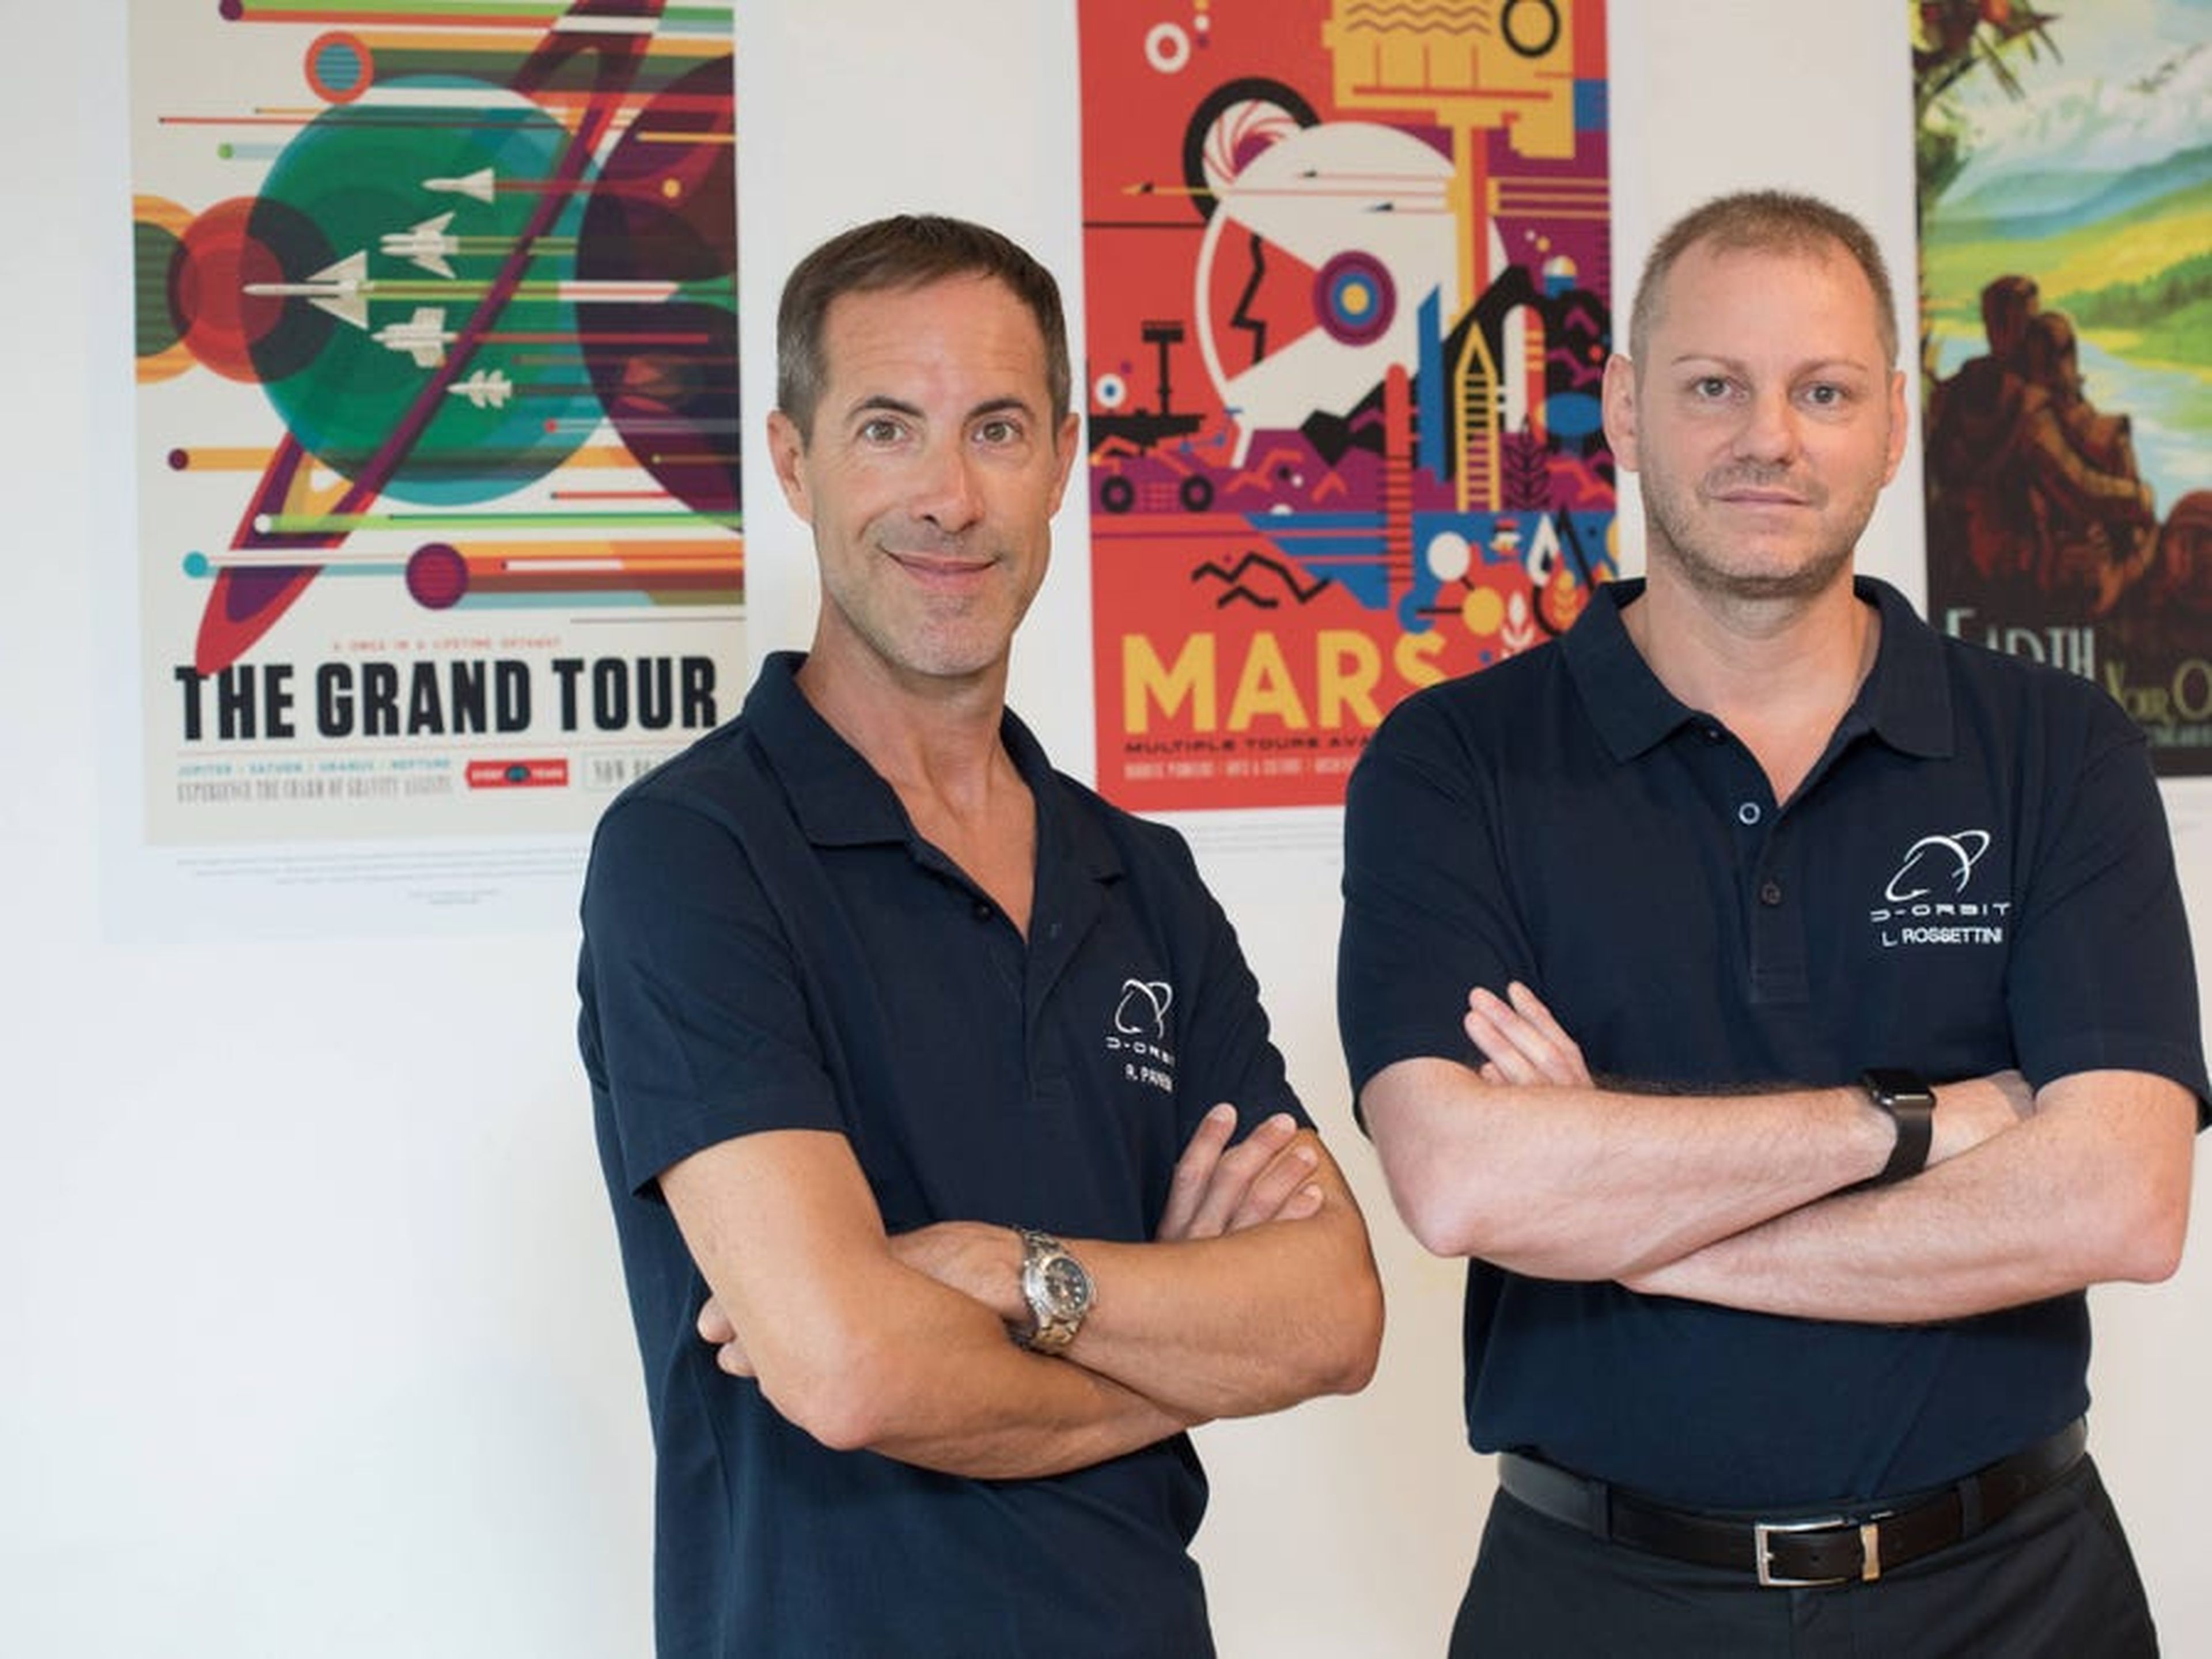 Los fundadores de D-Orbit, Luca Rossettini, CEO, y Renato Panesi, CCO.